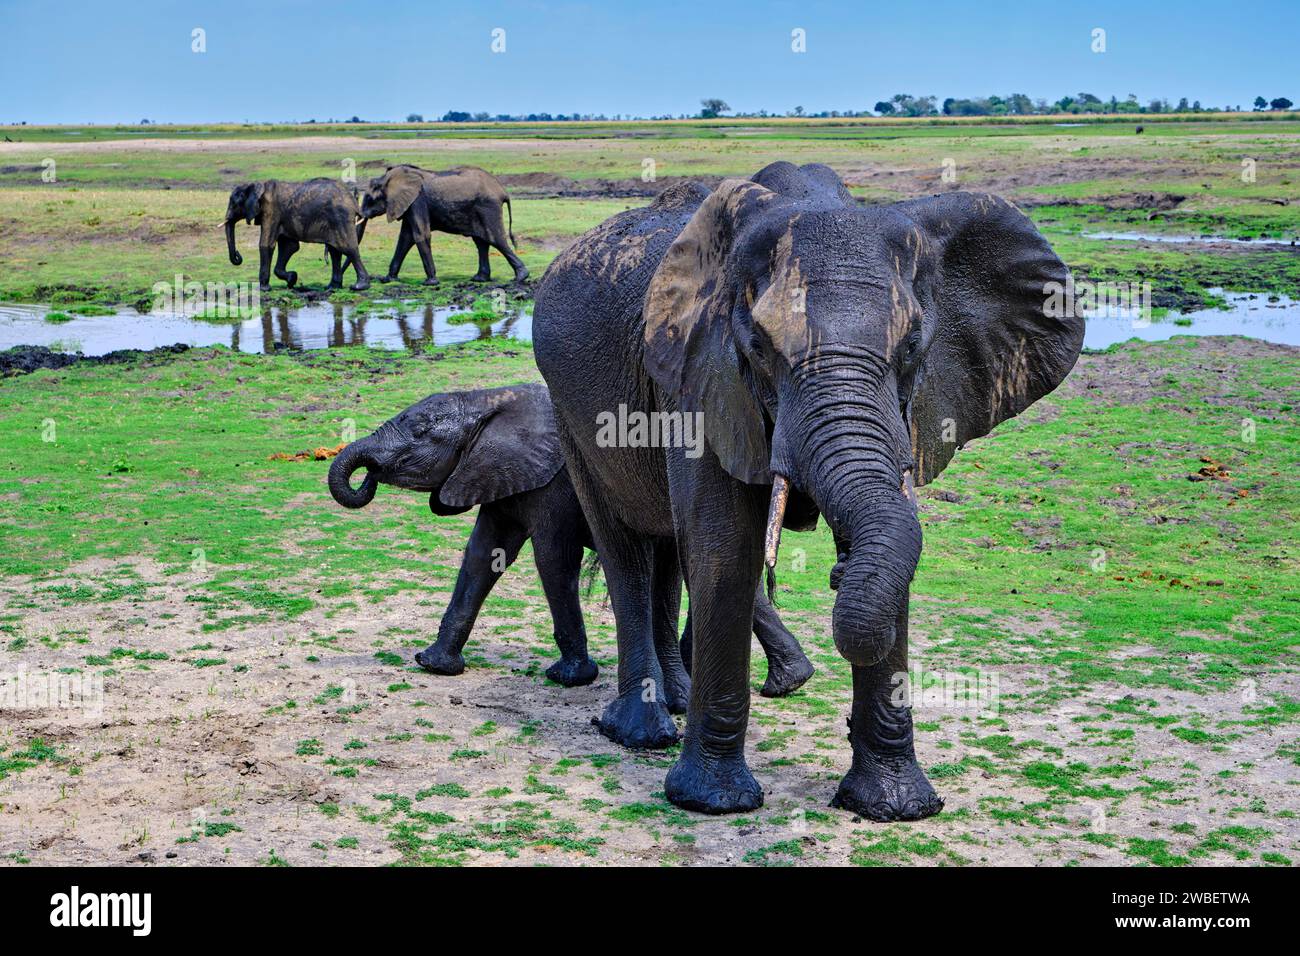 Botswana, District du Nord-Ouest, Parc National de Chobe, éléphants sauvages d'Afrique (Loxodonta africana) avec bébé éléphant Banque D'Images